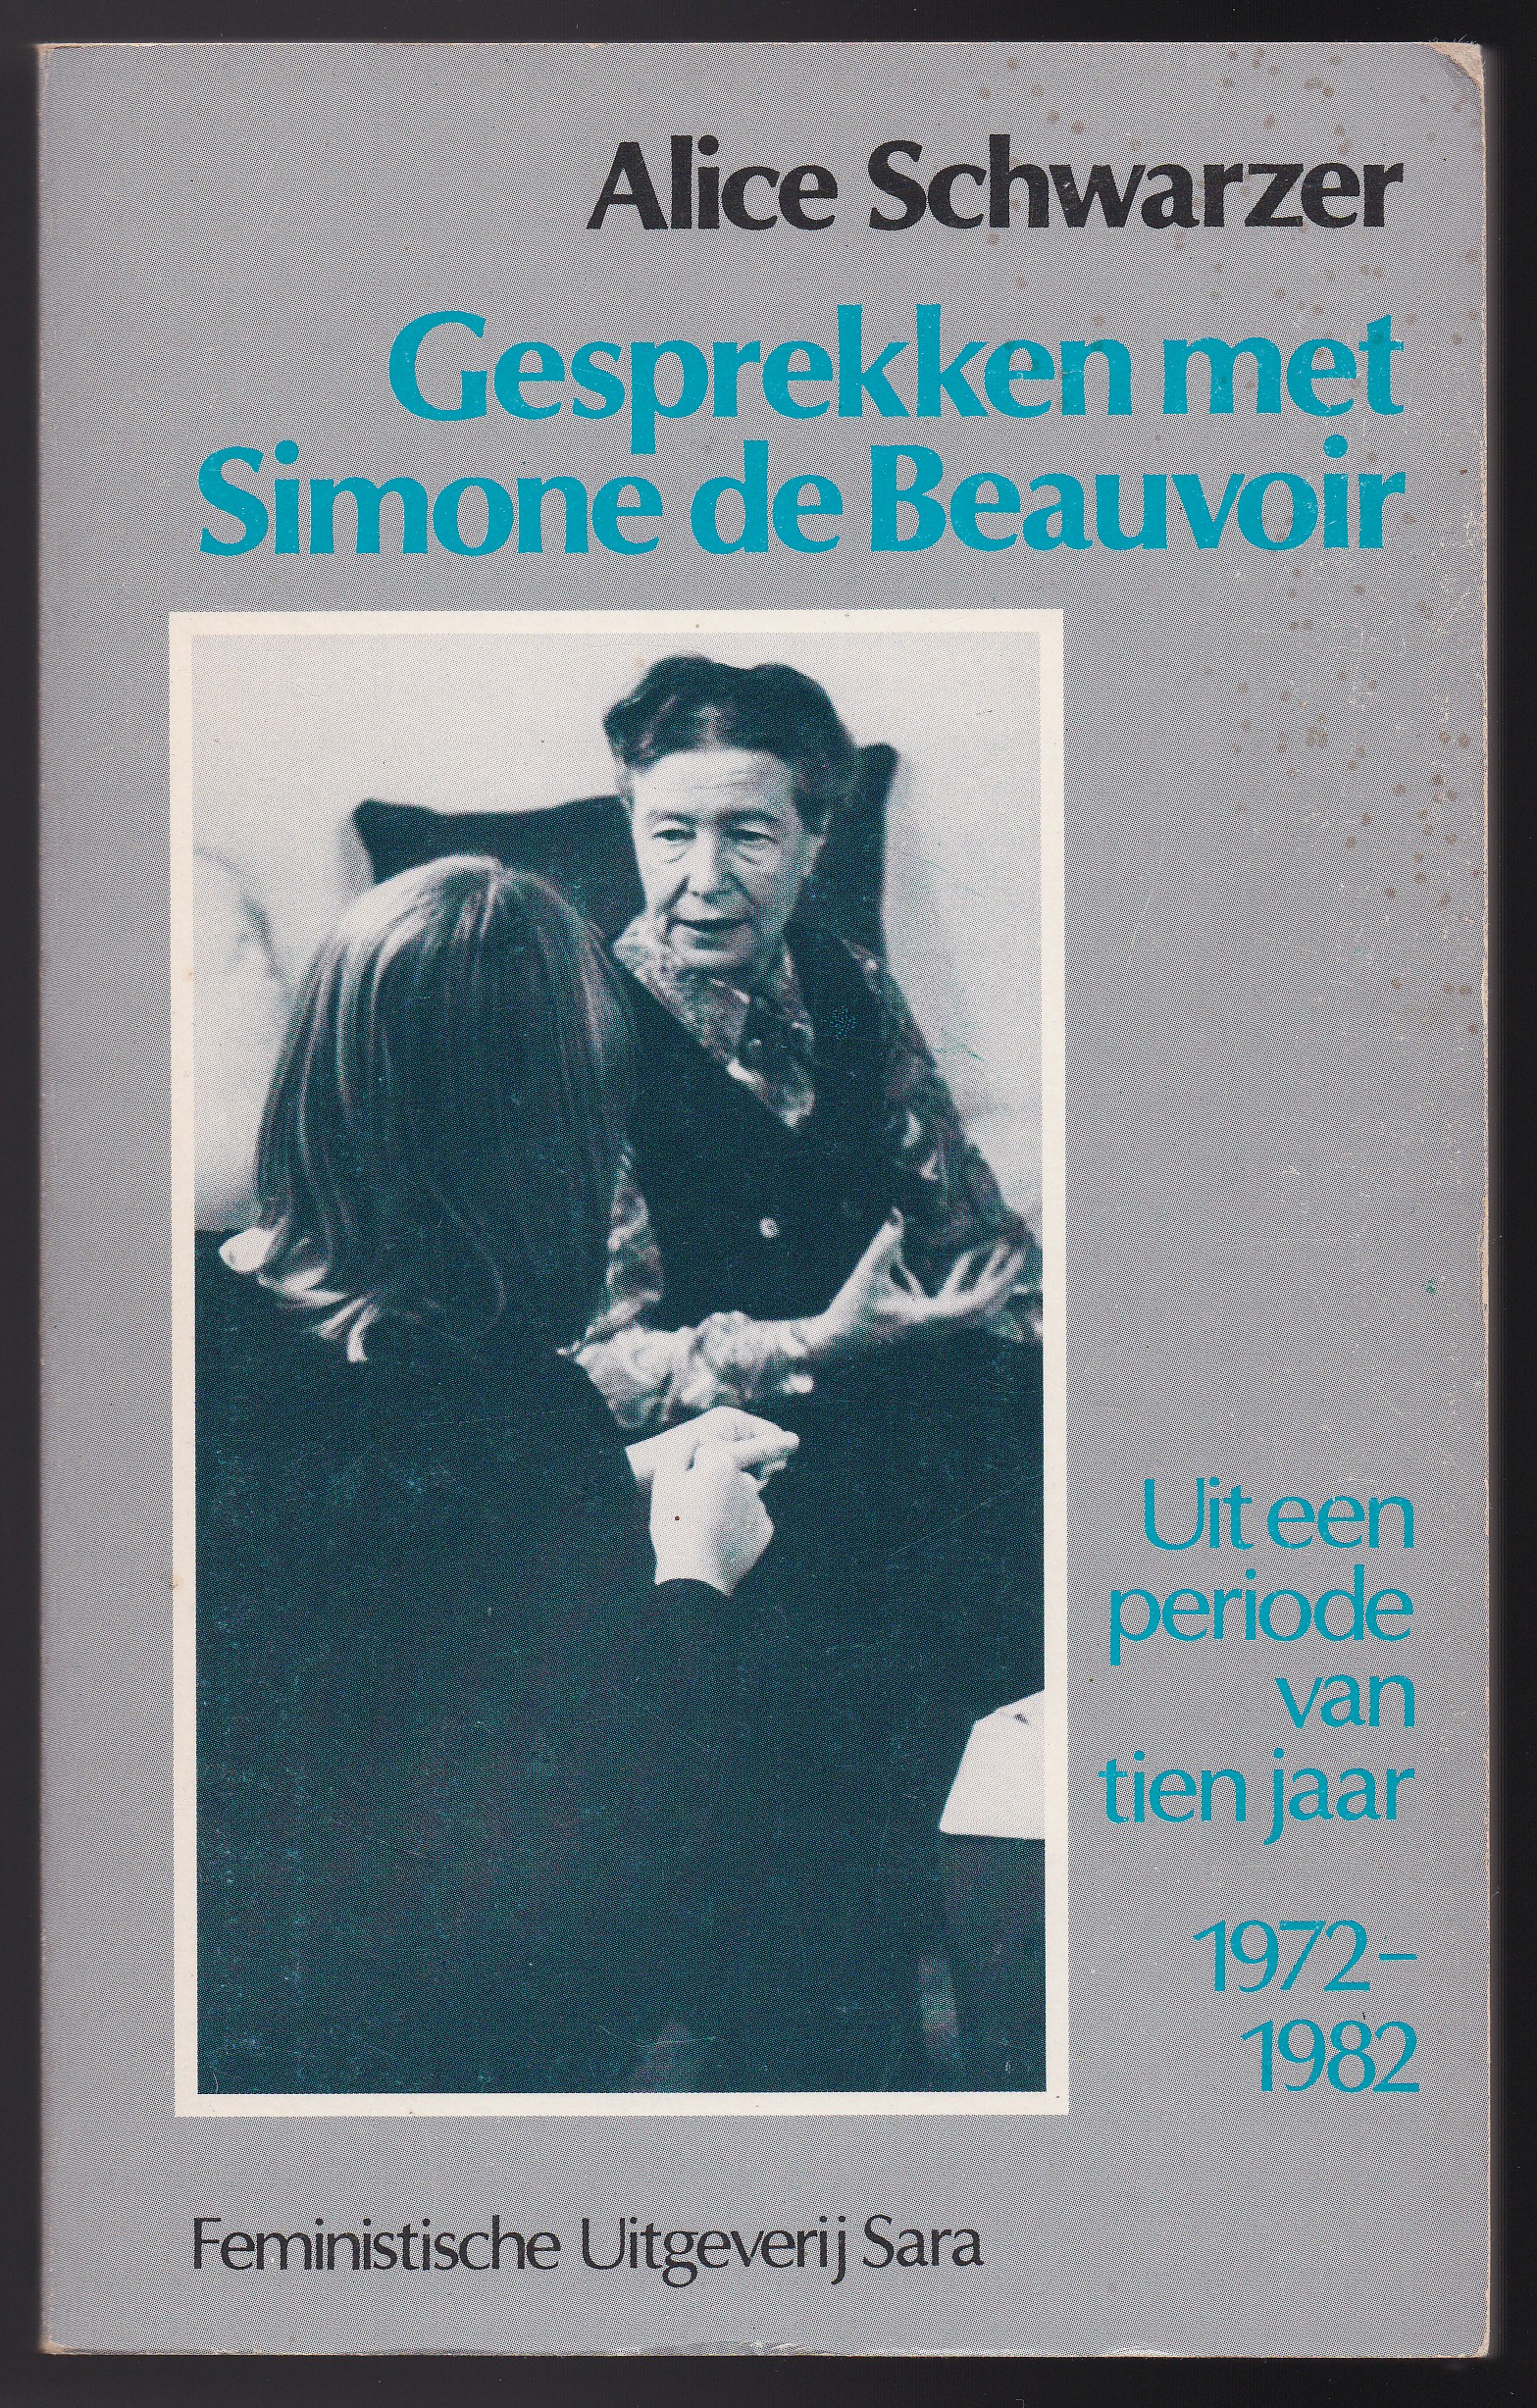 Schwarzer, Alice - Gesprekken met Simone de Beauvoir. Uit een periode van tien jaar 1972-1982. Vertaling: Jos Rijnaarts